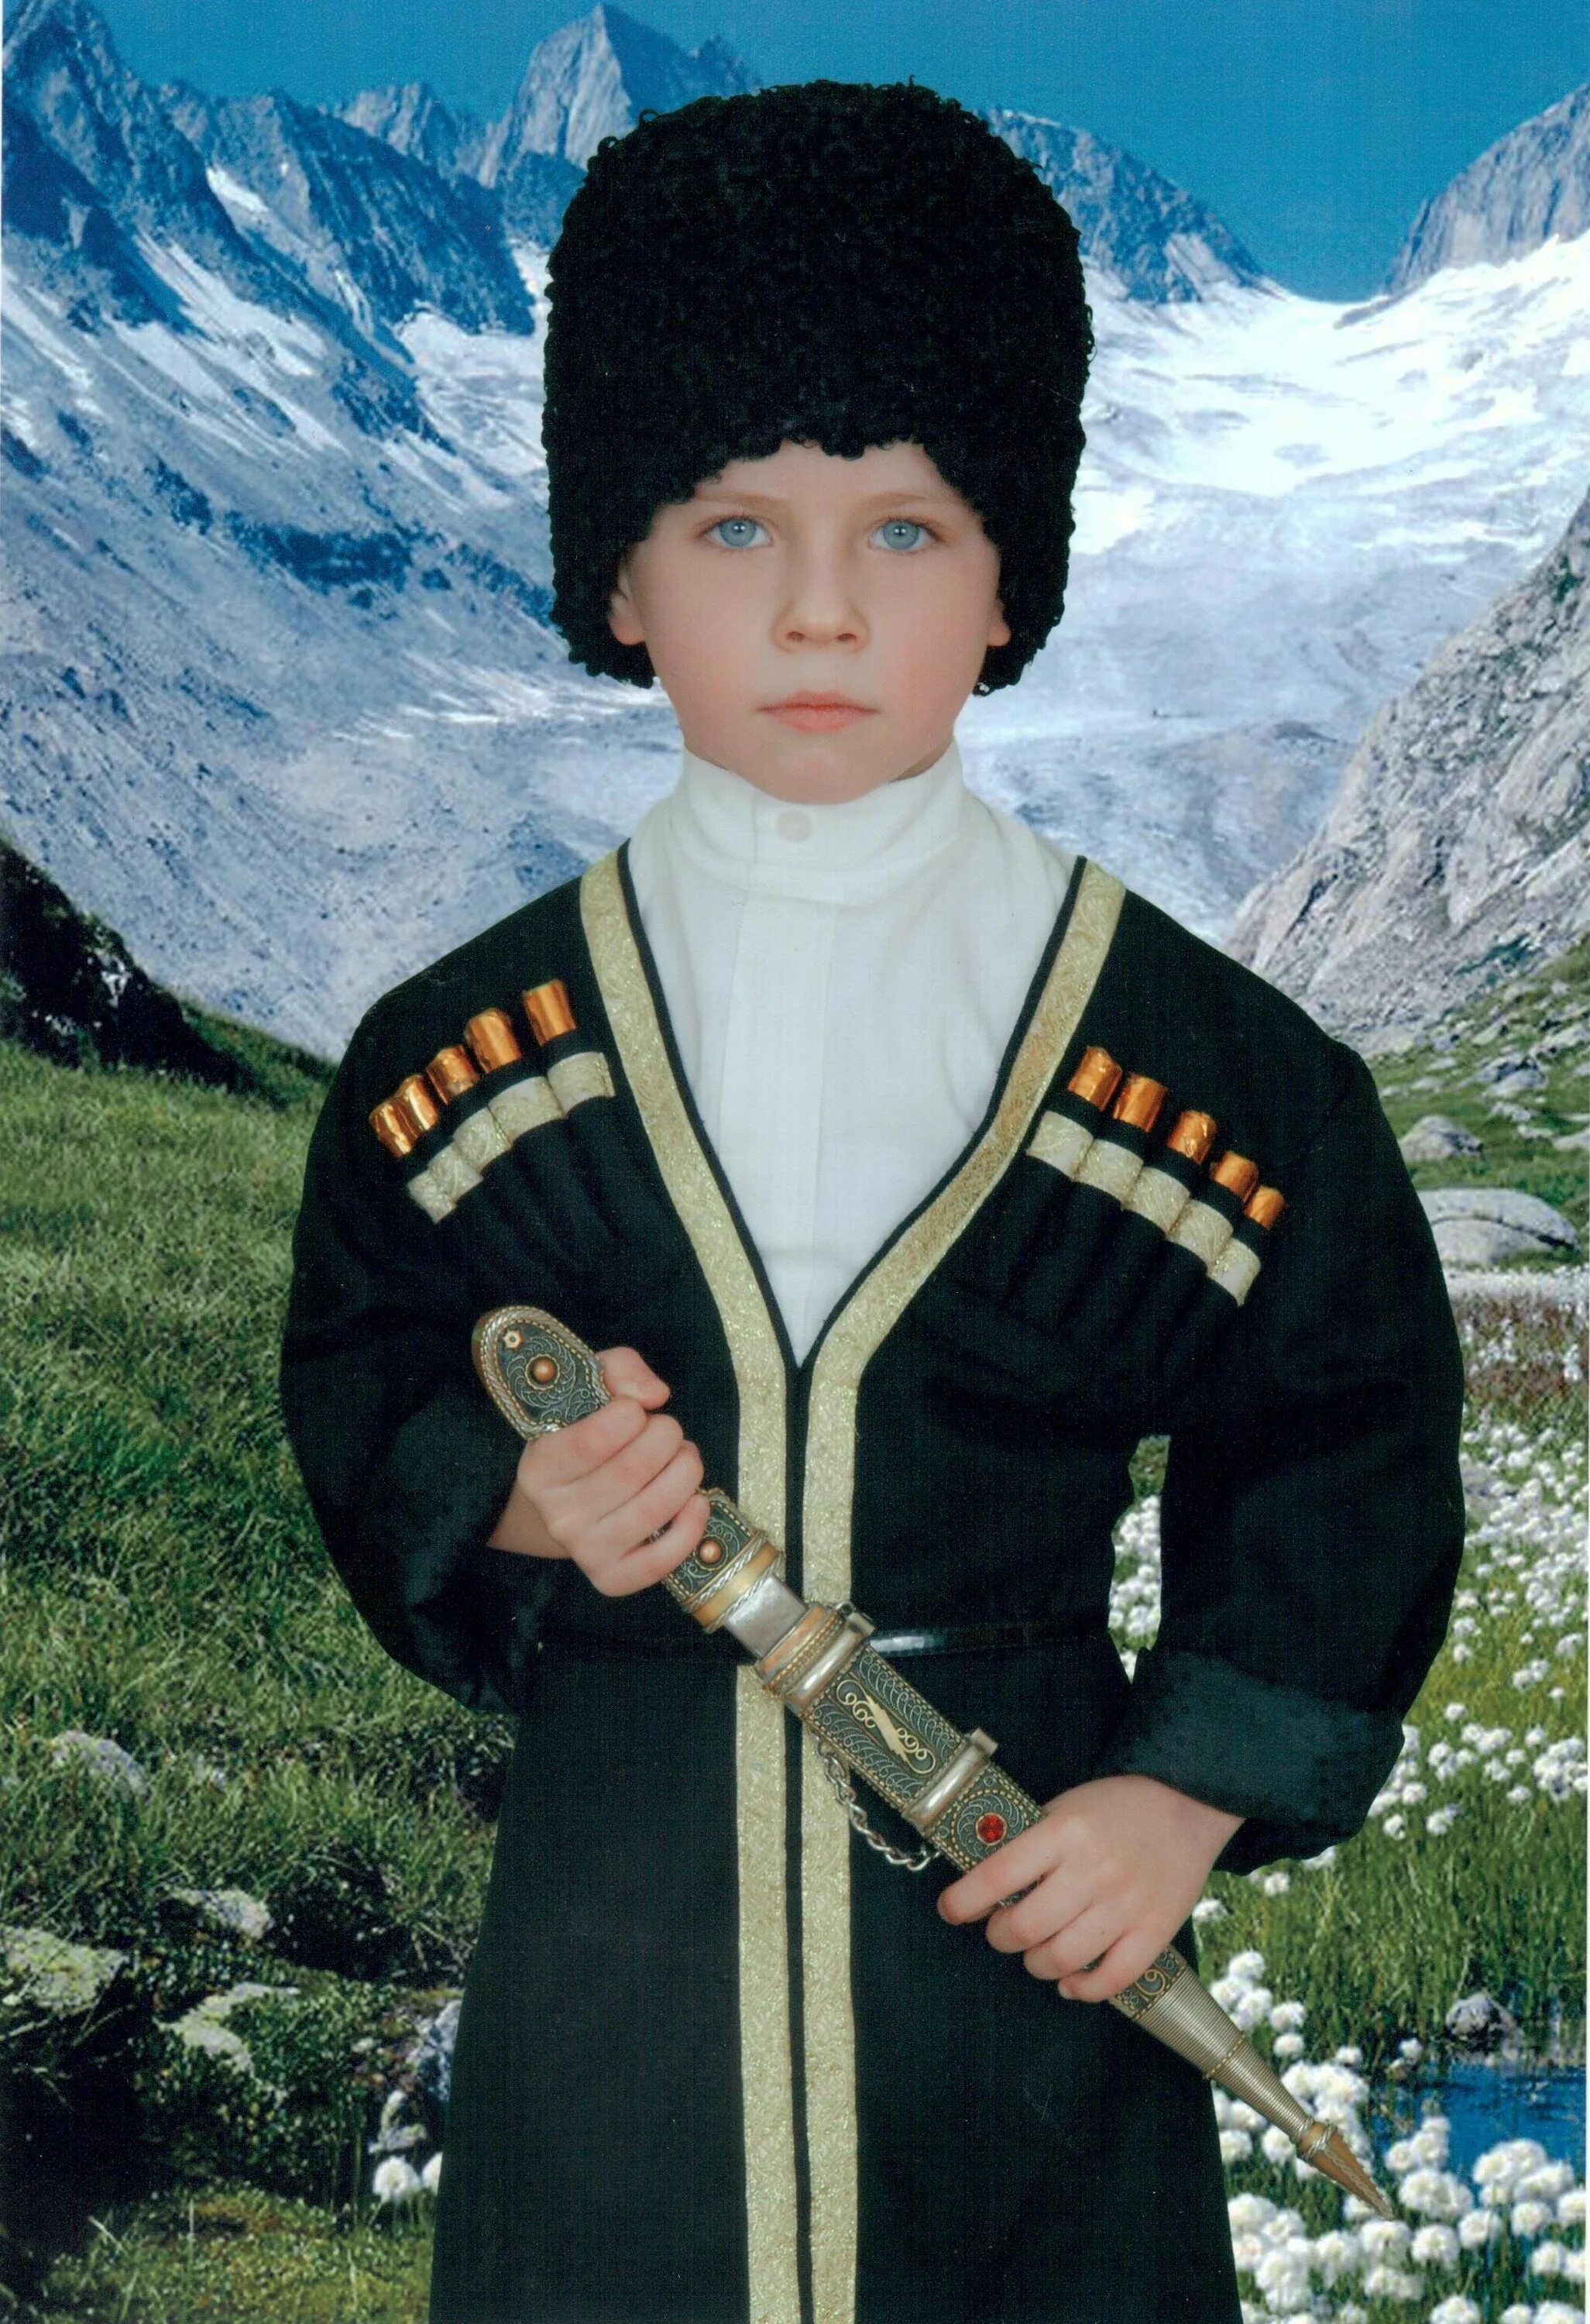 Северная Осетия национальный костюм. Северная Осетия национальный костюм мужской. Сев Осетия нац костюмы. Национальный костюм осетинцев. Костюм осетина